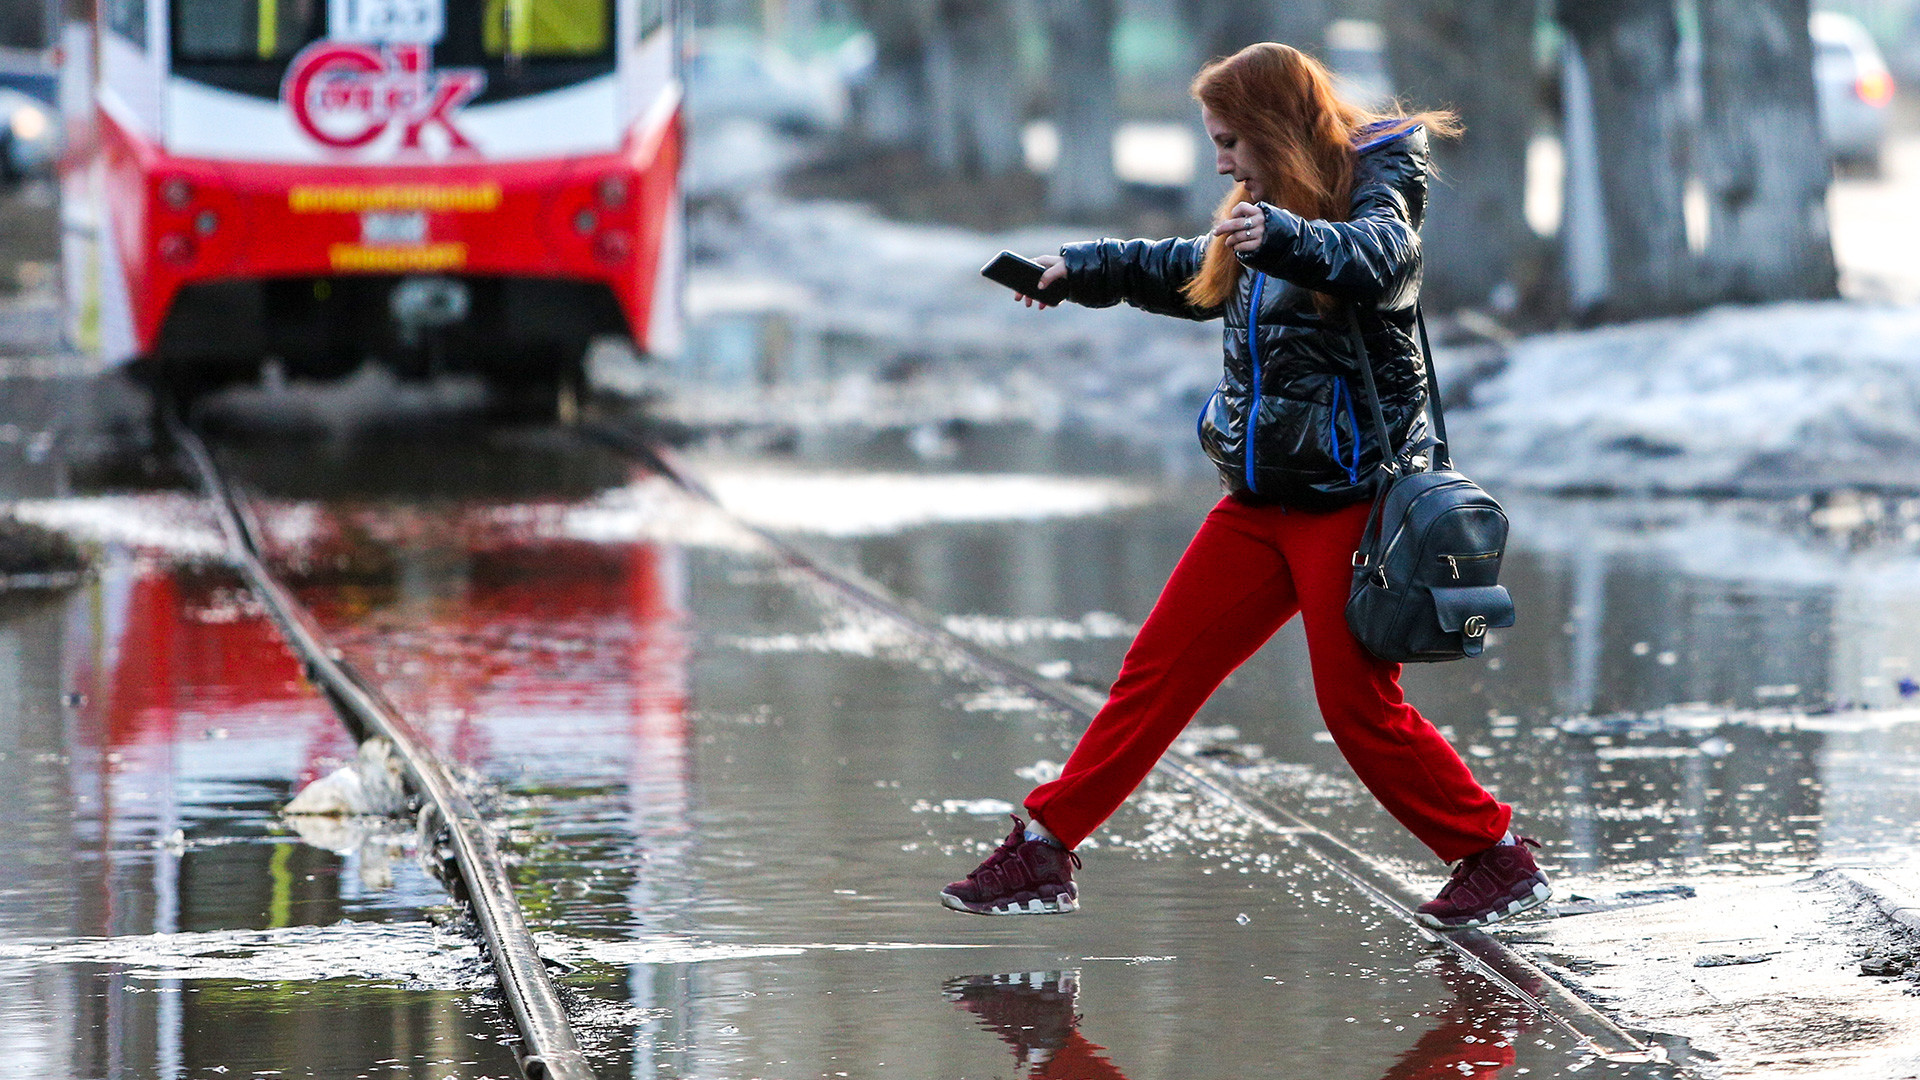 Омск, 7 апреля 2021 года: Женщина переступает через воду на затопленной улице. Наводнение вызвано таянием снега
